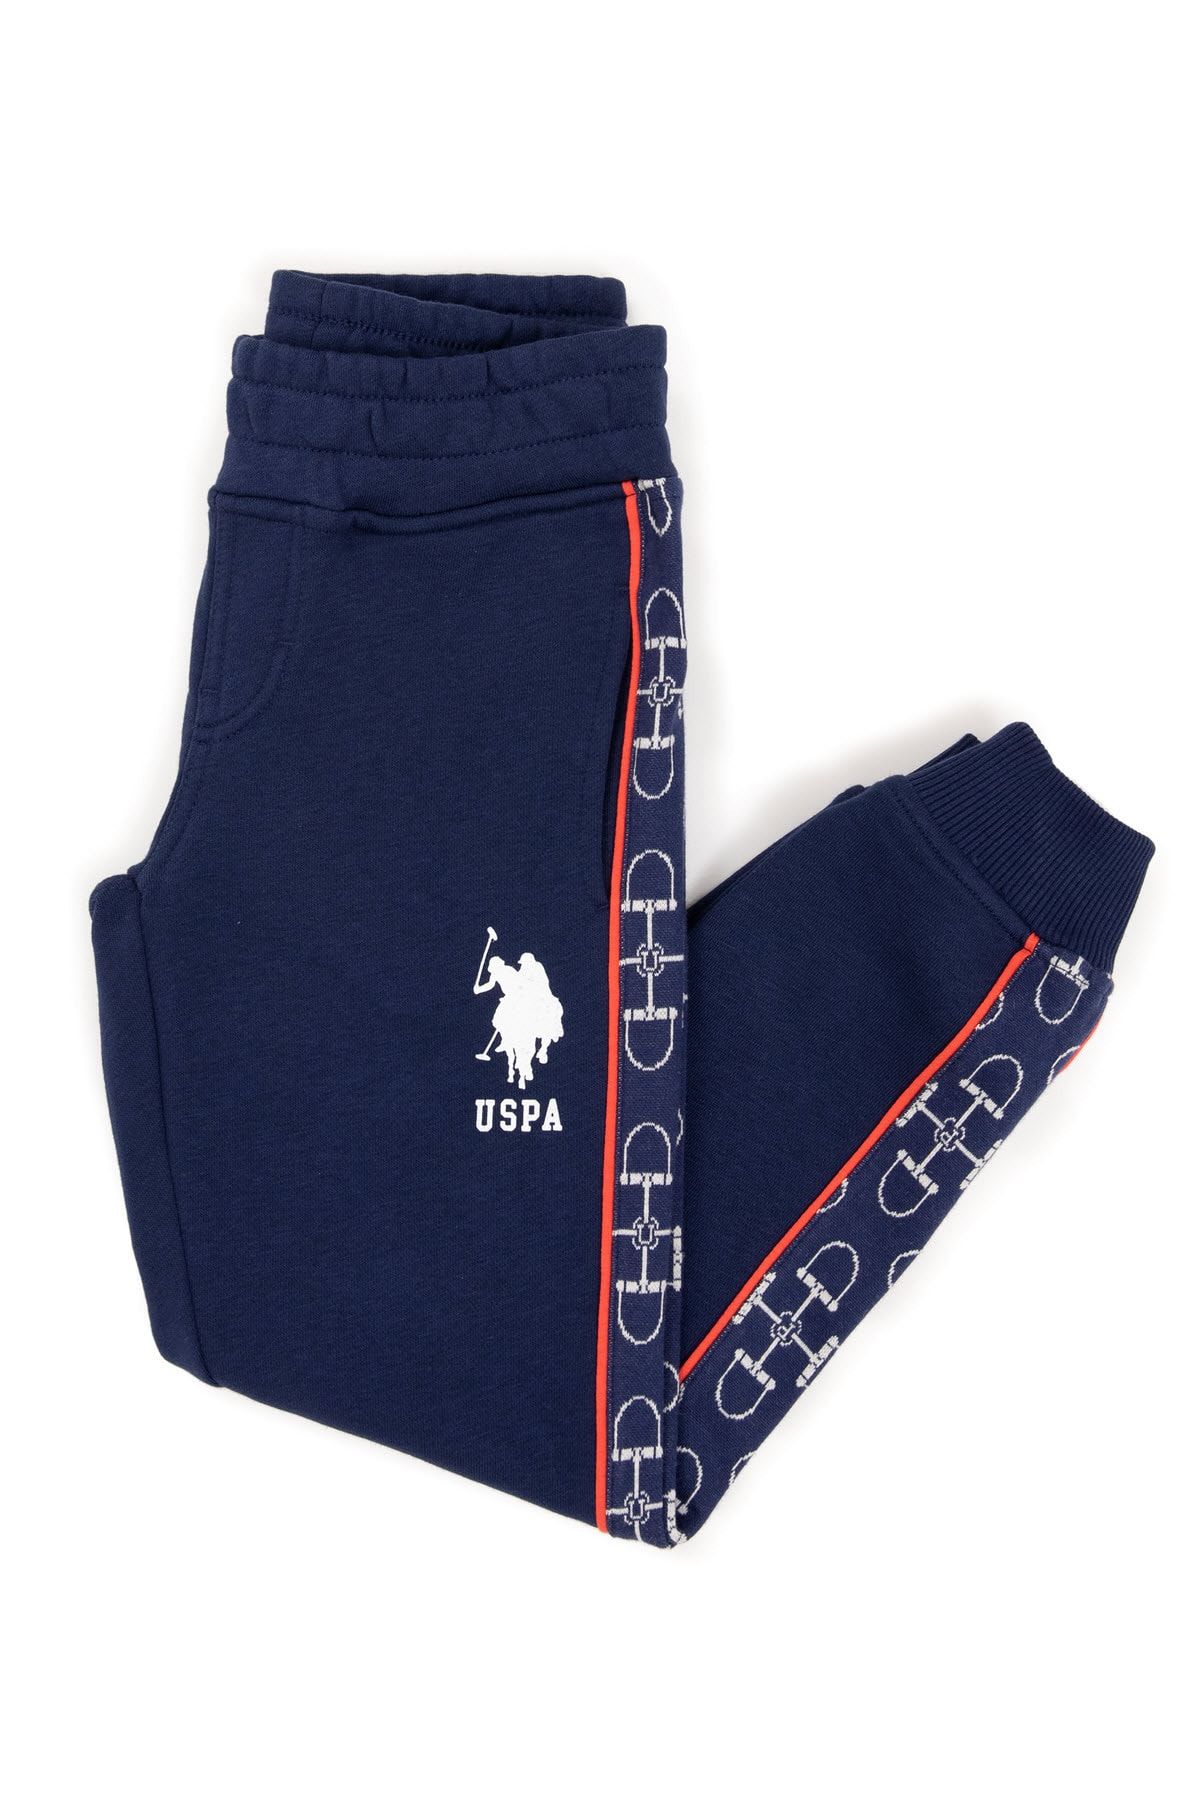 U.S. Polo Assn. Lacivert Erkek Çocuk Örme Pantolon